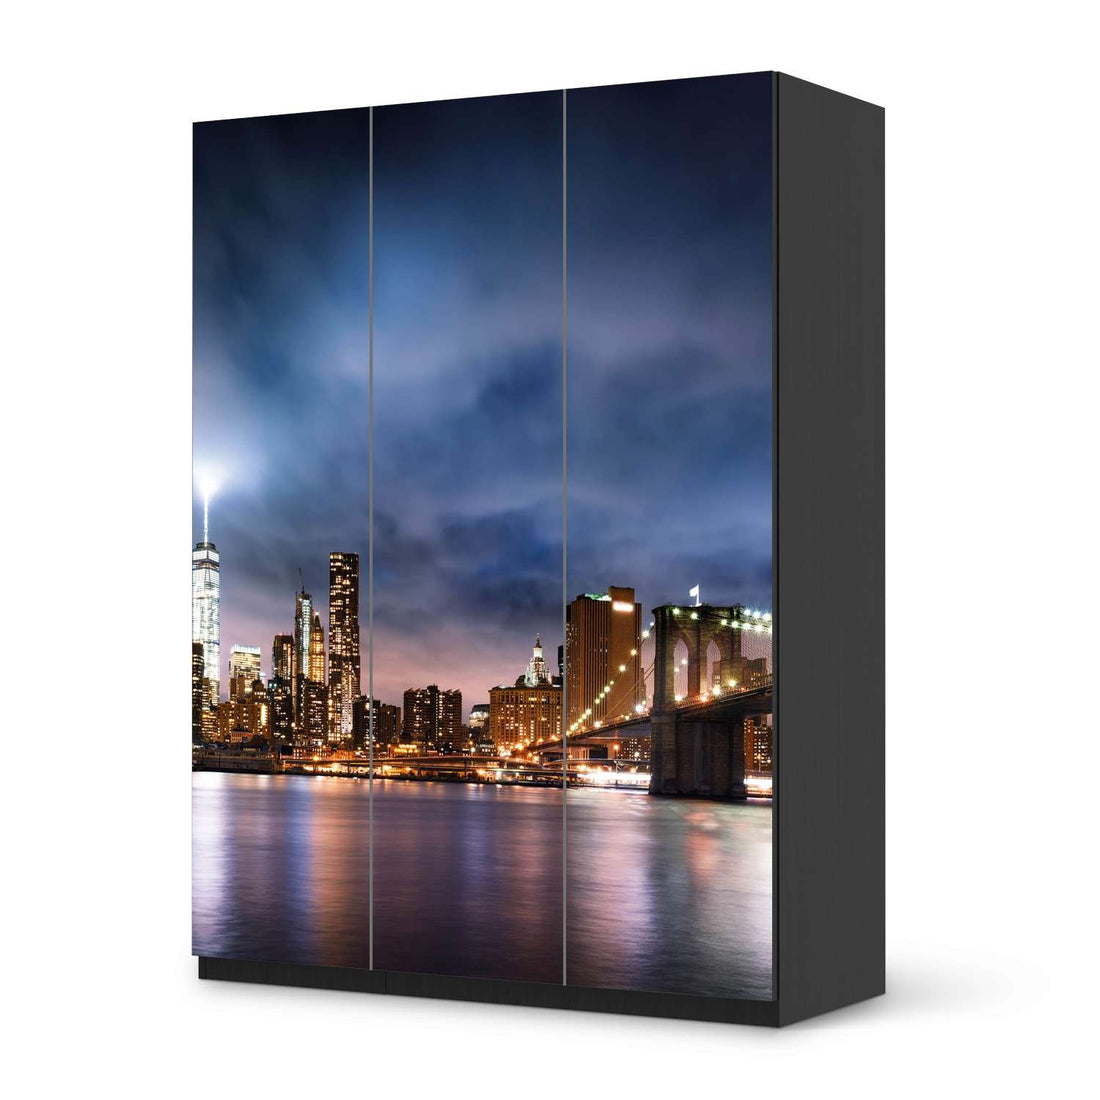 Folie für Möbel Brooklyn Bridge - IKEA Pax Schrank 201 cm Höhe - 3 Türen - schwarz